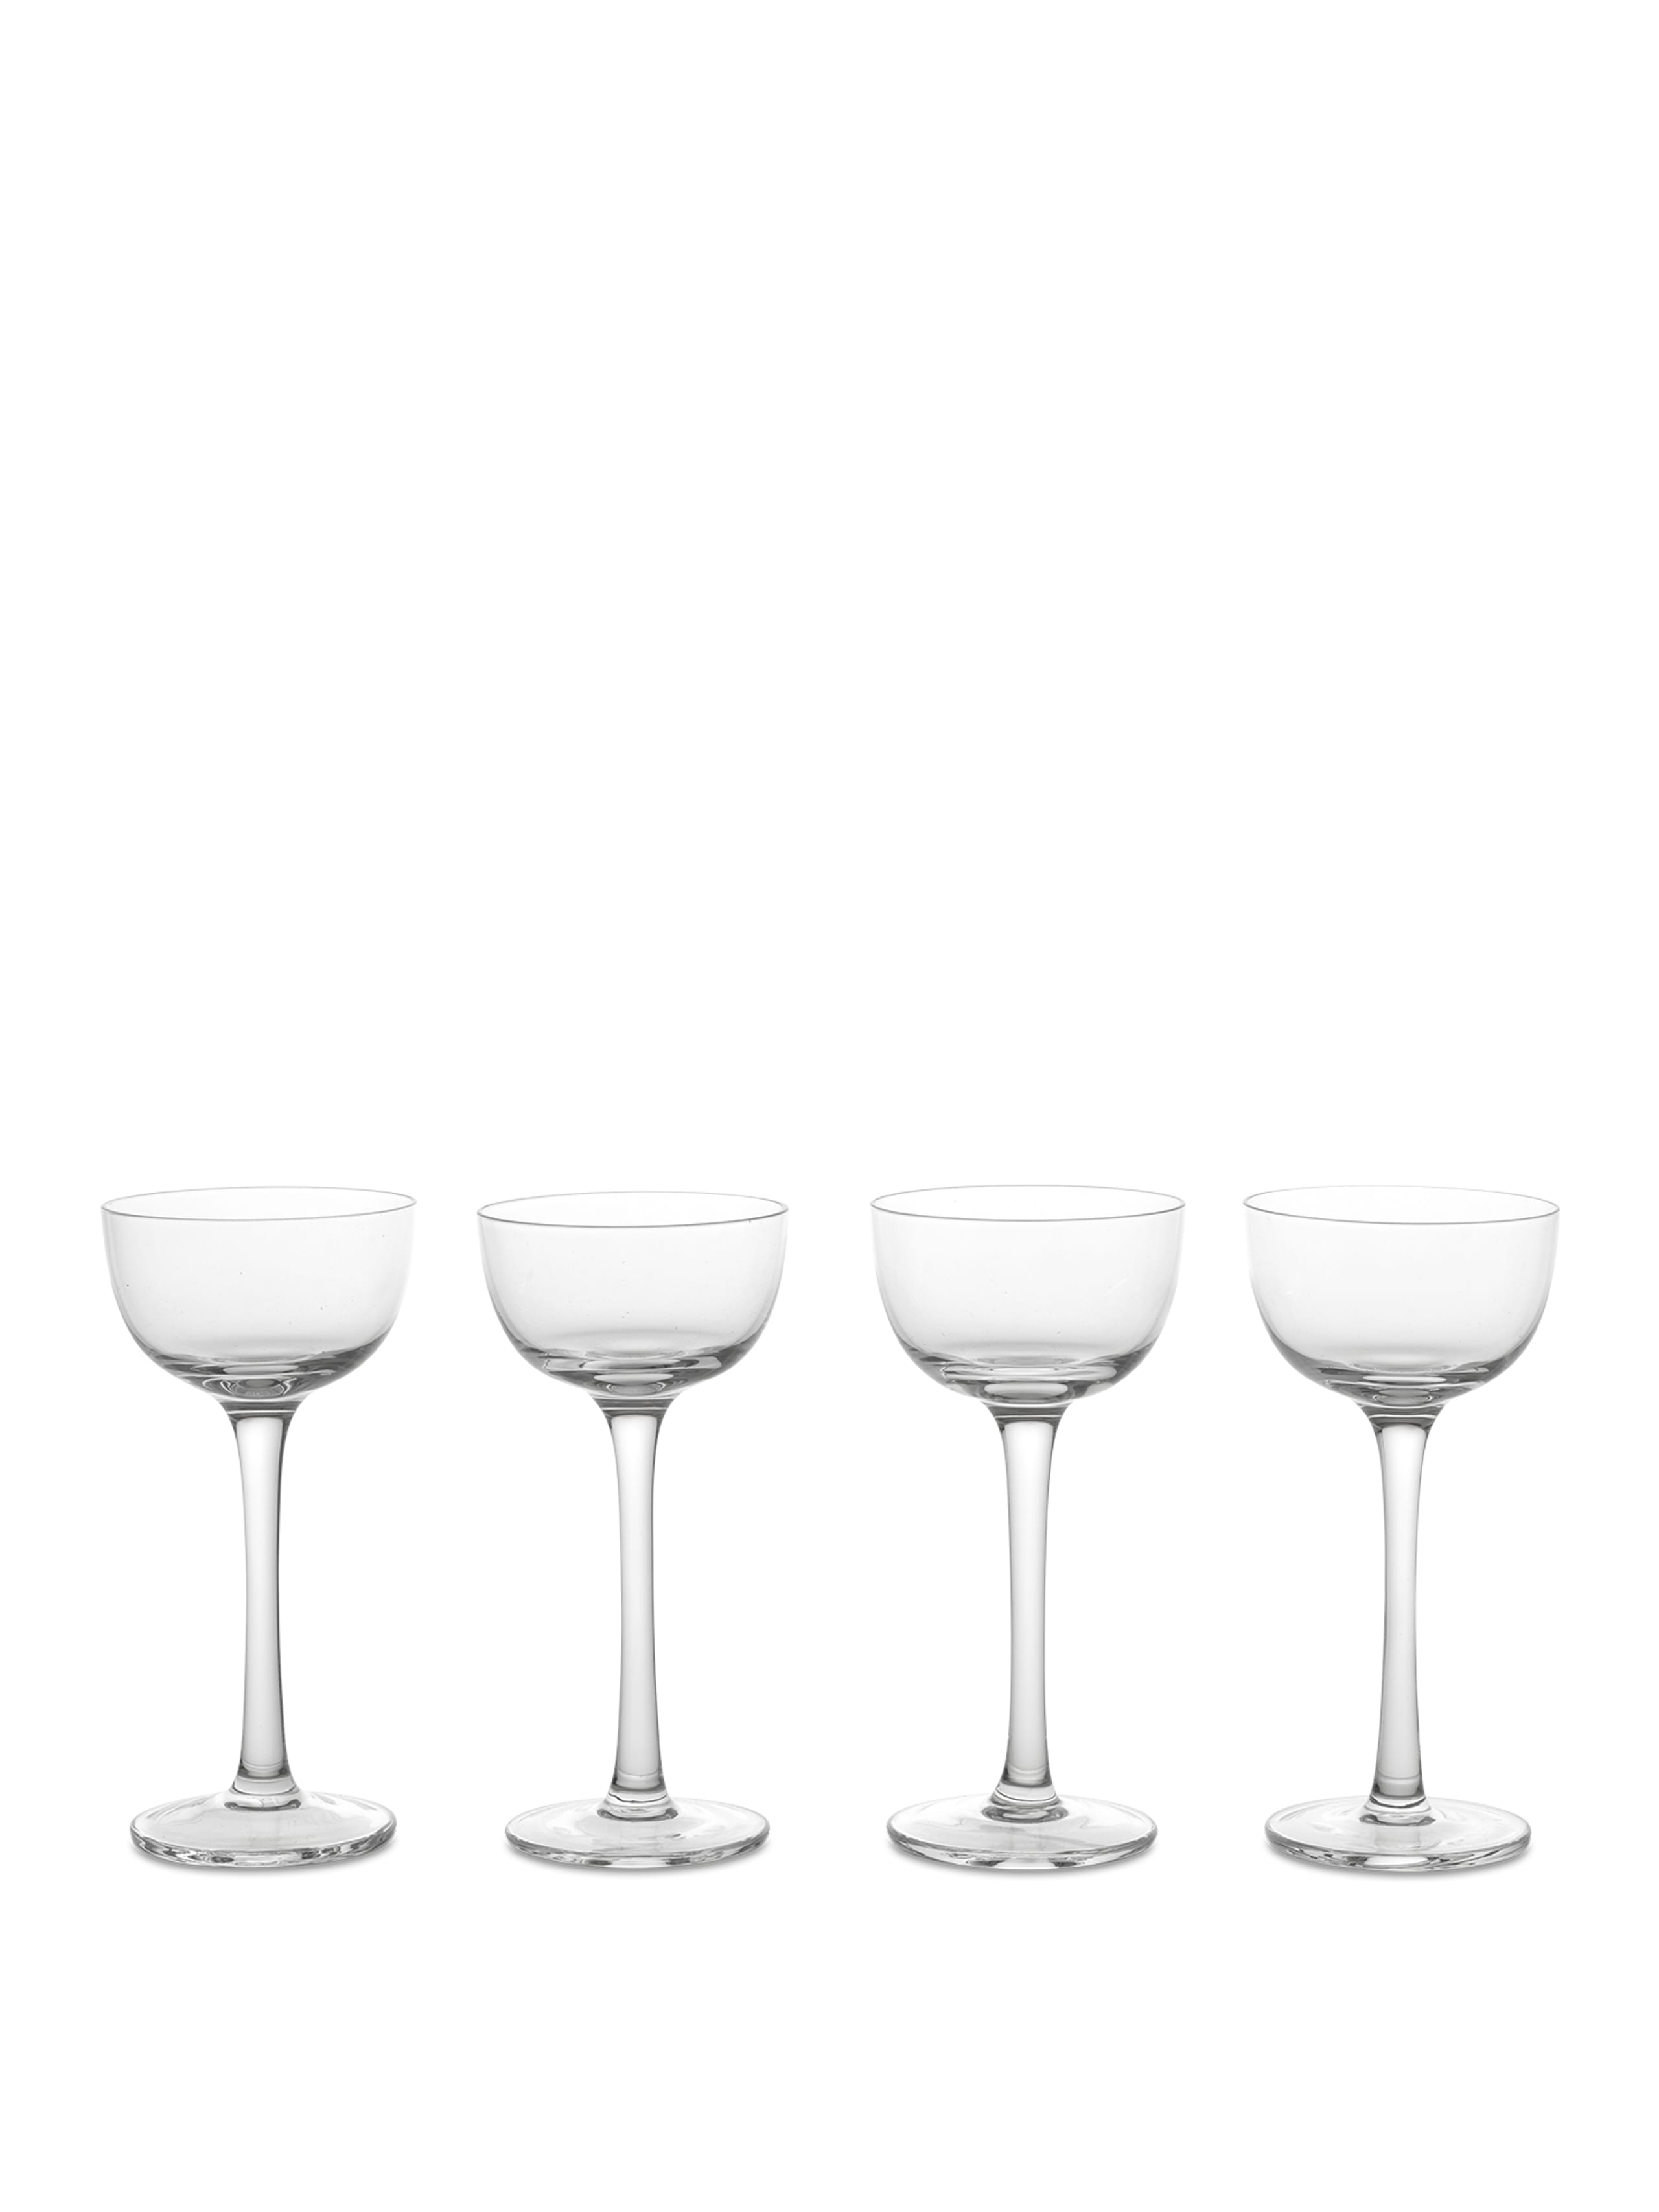 Ferm Living -  - Host Liqueur Glasses - Host Liqueur Glasses - Set of 4 - Clear